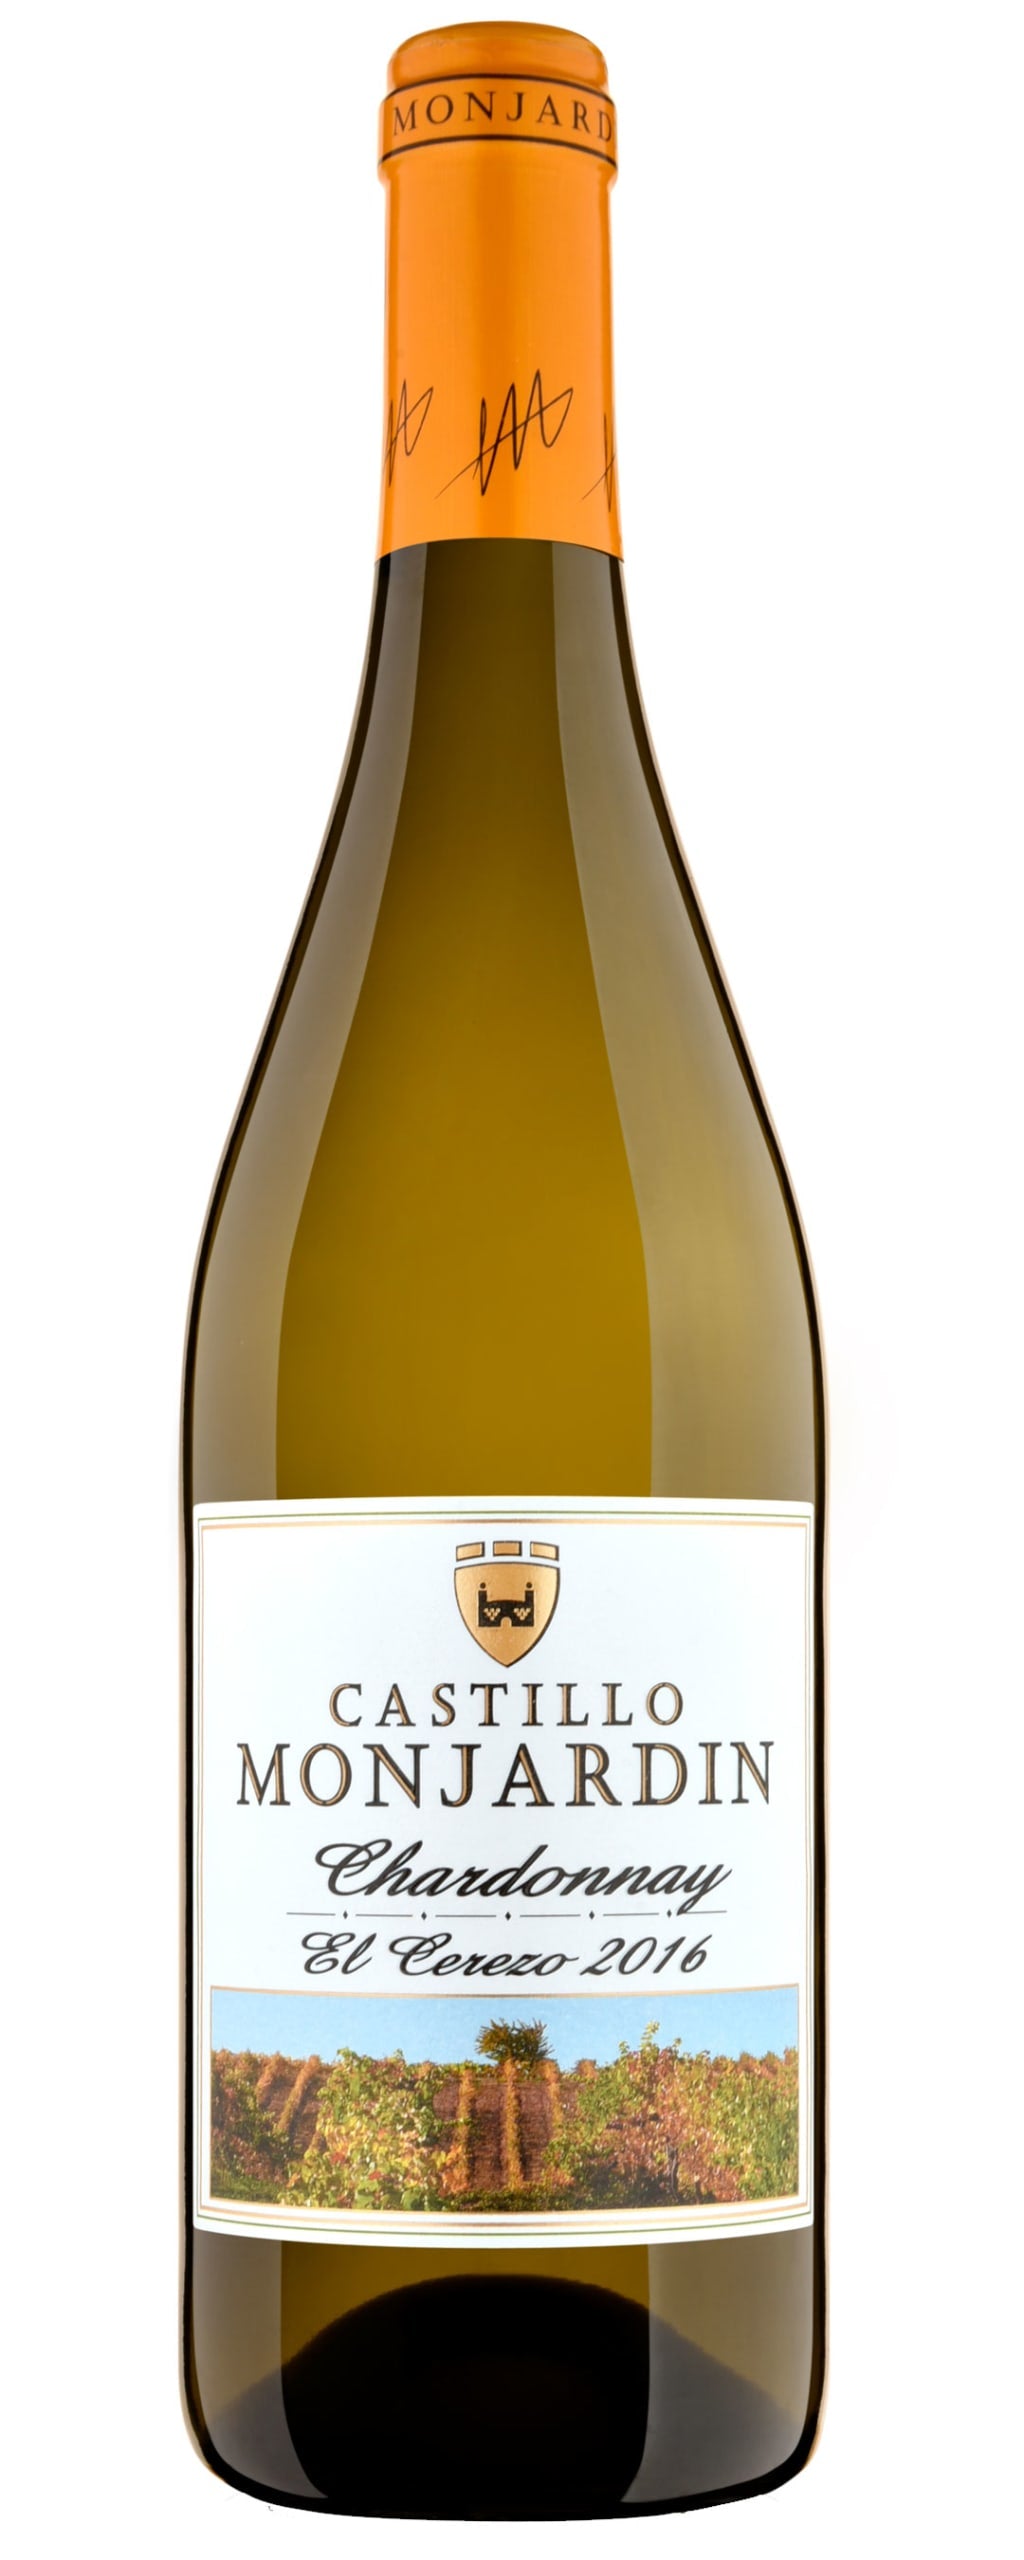 Castillo Monjardin Chardonnay El Cerezo 2016